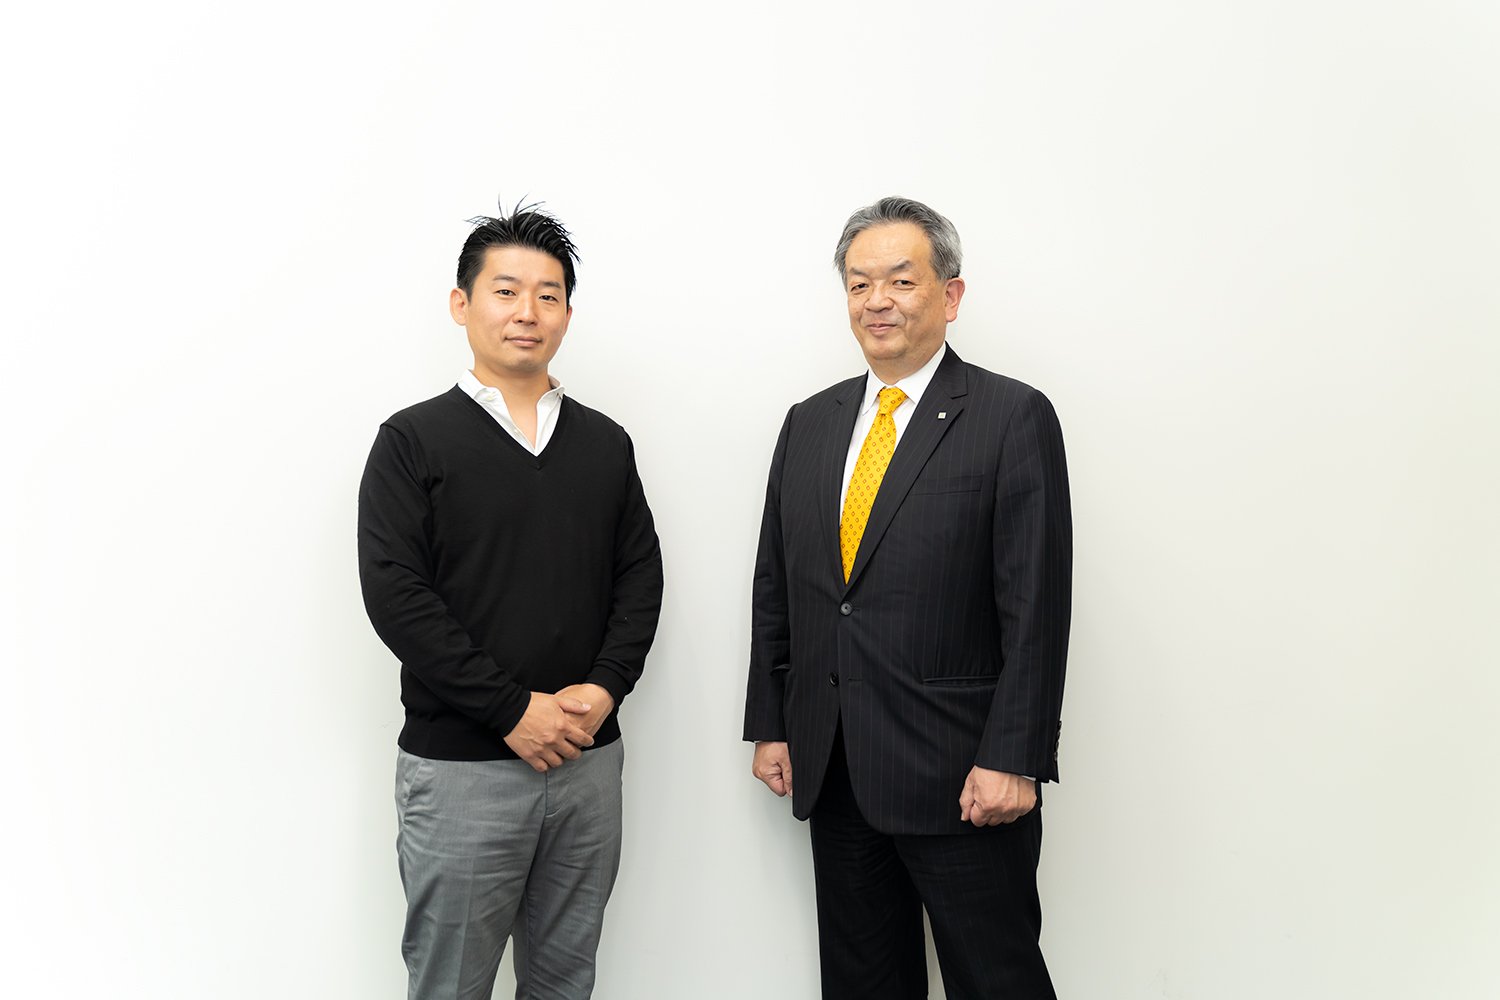 左からタノム代表取締役の川野秀哉氏、インフォマート代表取締役社長の長尾收氏。両社では共に「食品受発注のデジタル化」に取り組んでおり、2月に資本業務提携を締結した